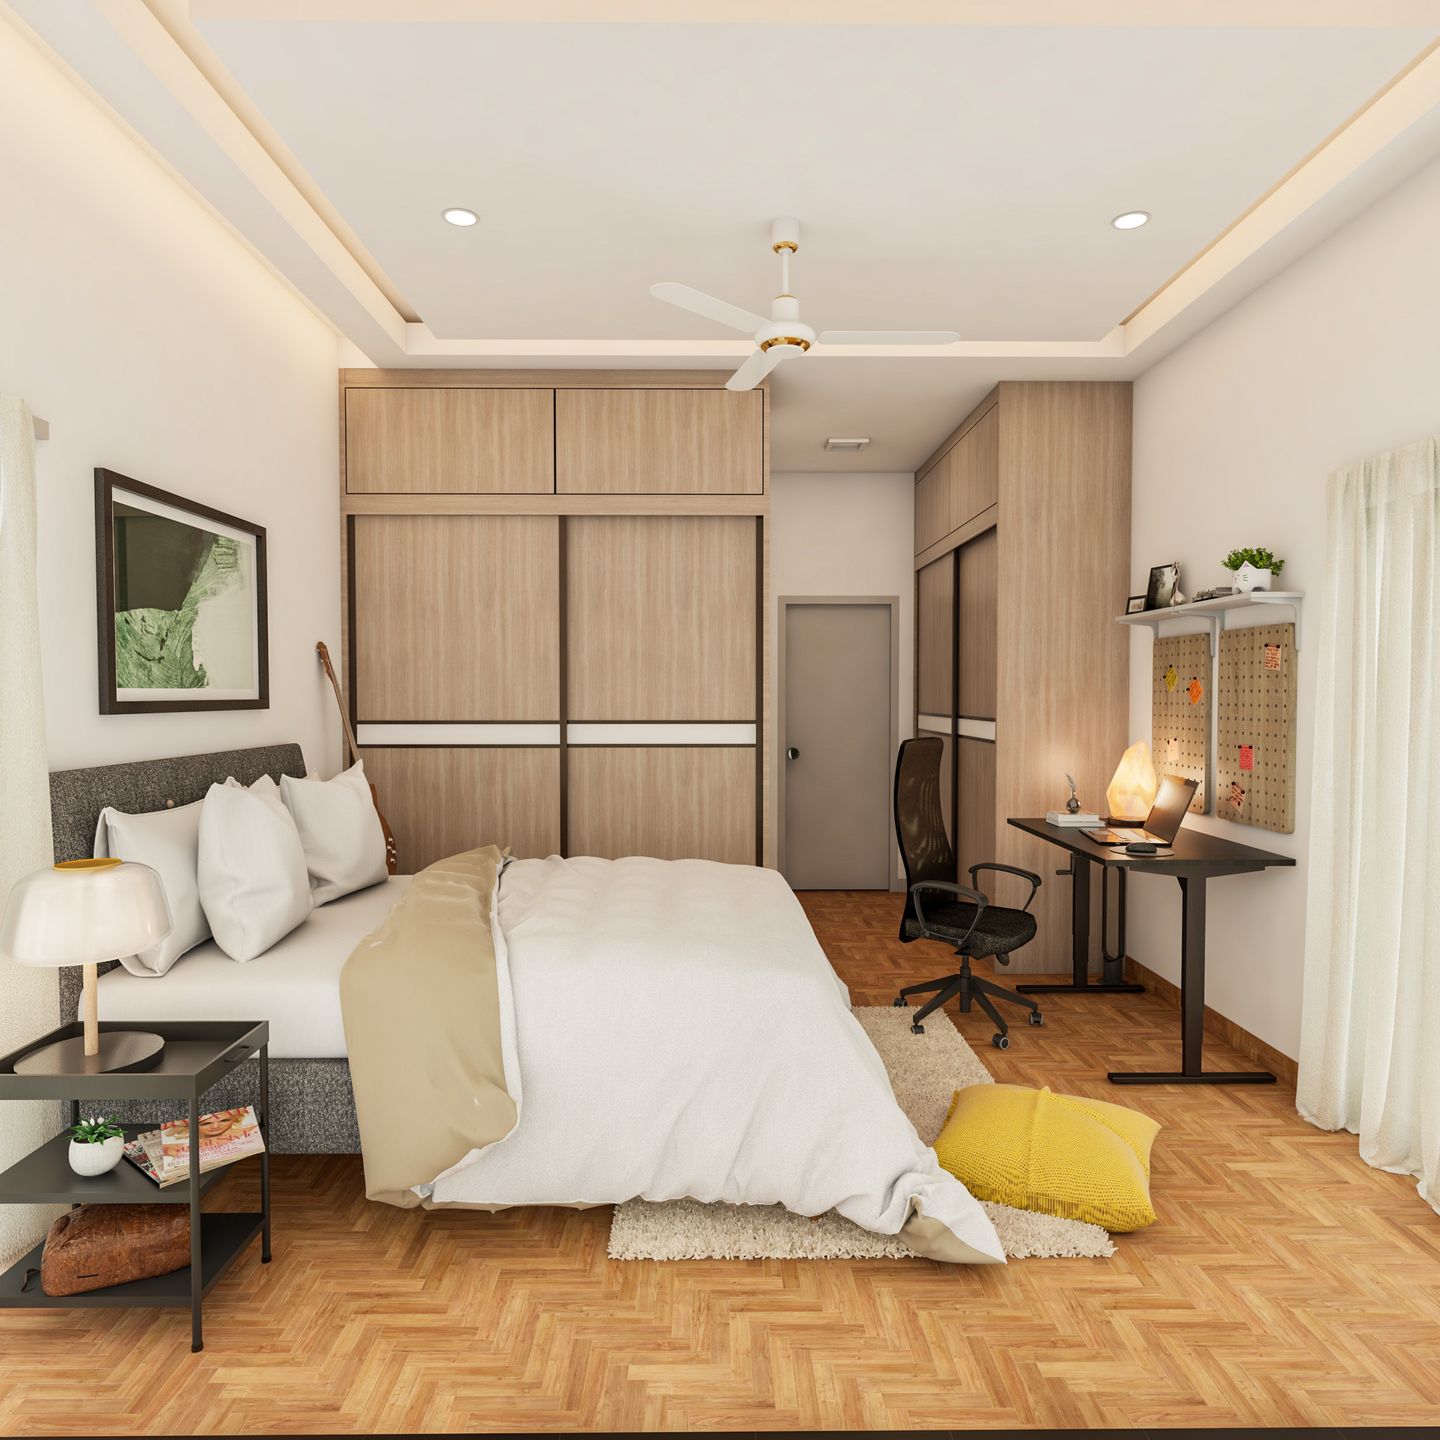 Modern Master Bedroom Design With Wardrobes - Livspace